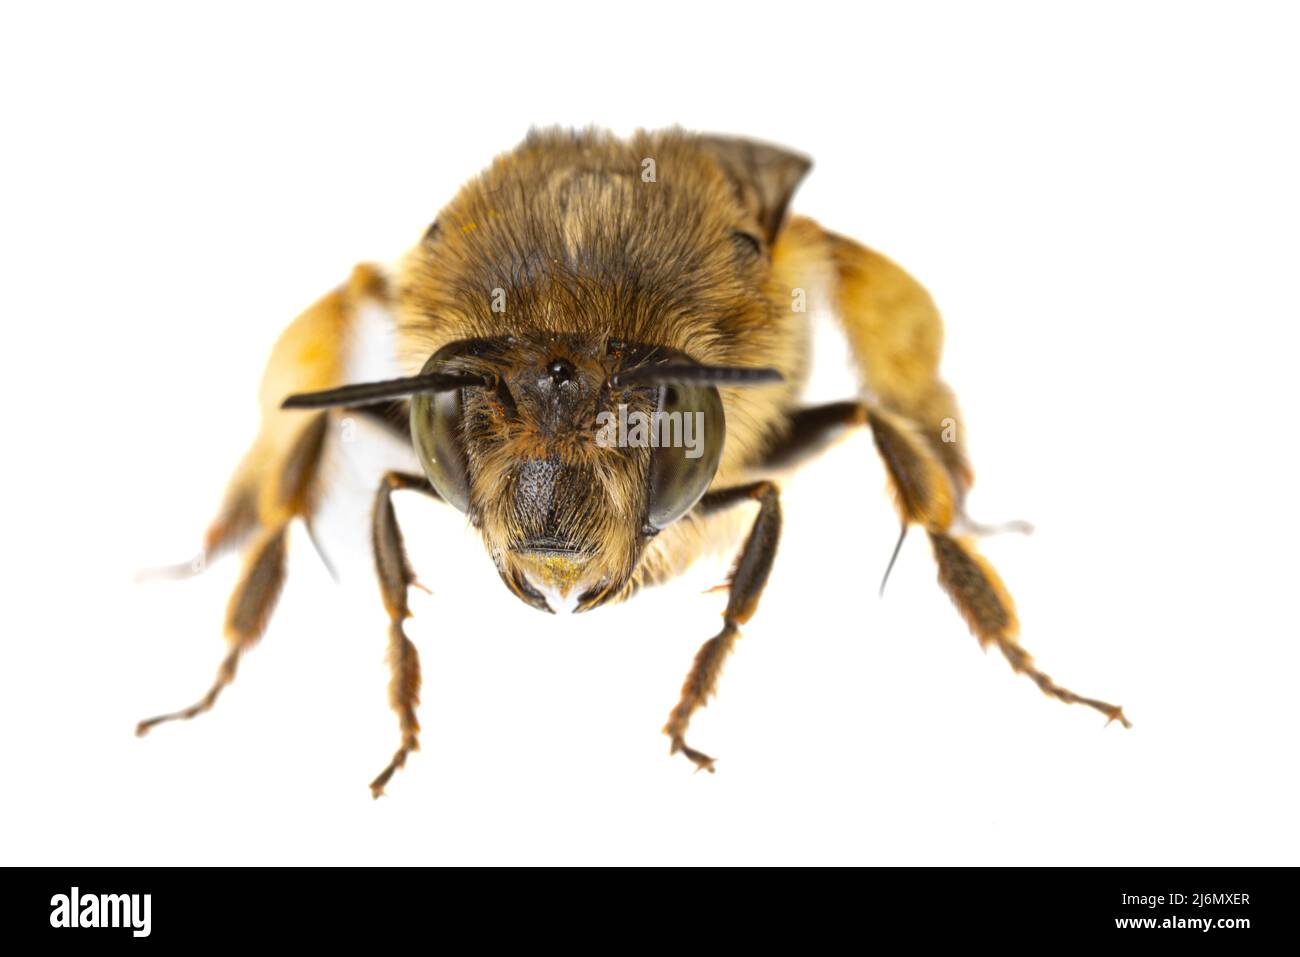 Insetti d'europa - api: Macro di femmine Anthophora crinipes (Pelzbienen) isolato su sfondo bianco - dettagli testa Foto Stock